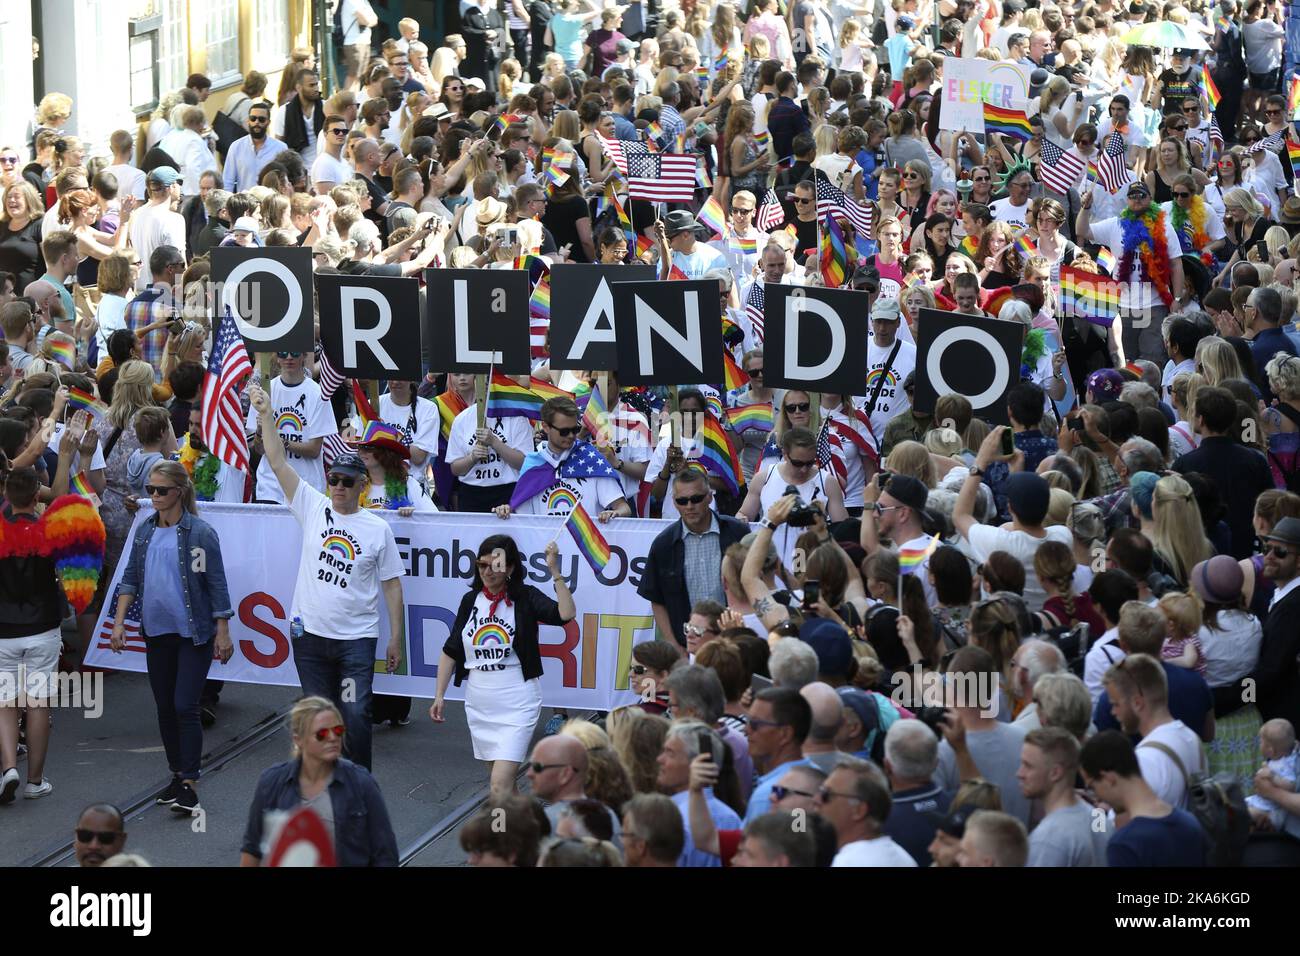 Oslo 20160625. Die Oslo Pride Parade findet in Verbindung mit dem Oslo Pride Festival statt. Der Vorfall in Orlando, bei dem am 12. Juni 49 Menschen getötet und über 50 weitere verletzt wurden, war ein wiederholtes Thema während der Parade. Foto: Vidar Ruud / NTB scanpix Stockfoto